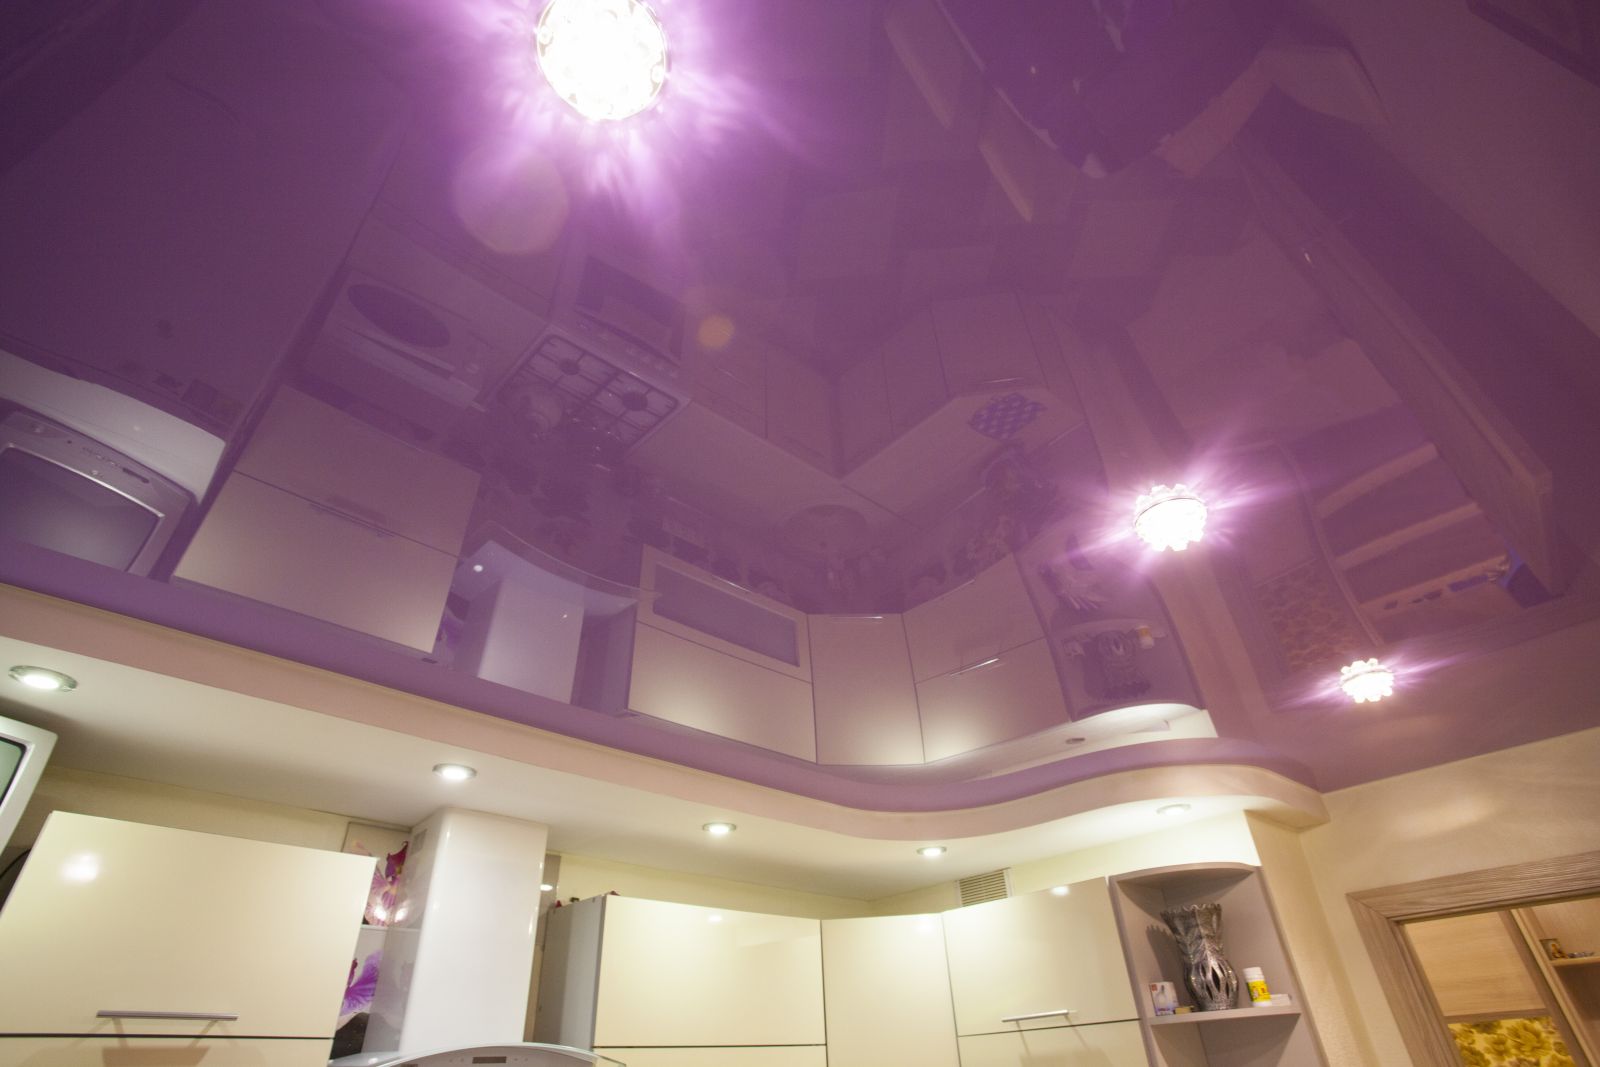 Двухуровневый потолок без подсветки, криволинейная конструкция, цветной глянец производства Германии